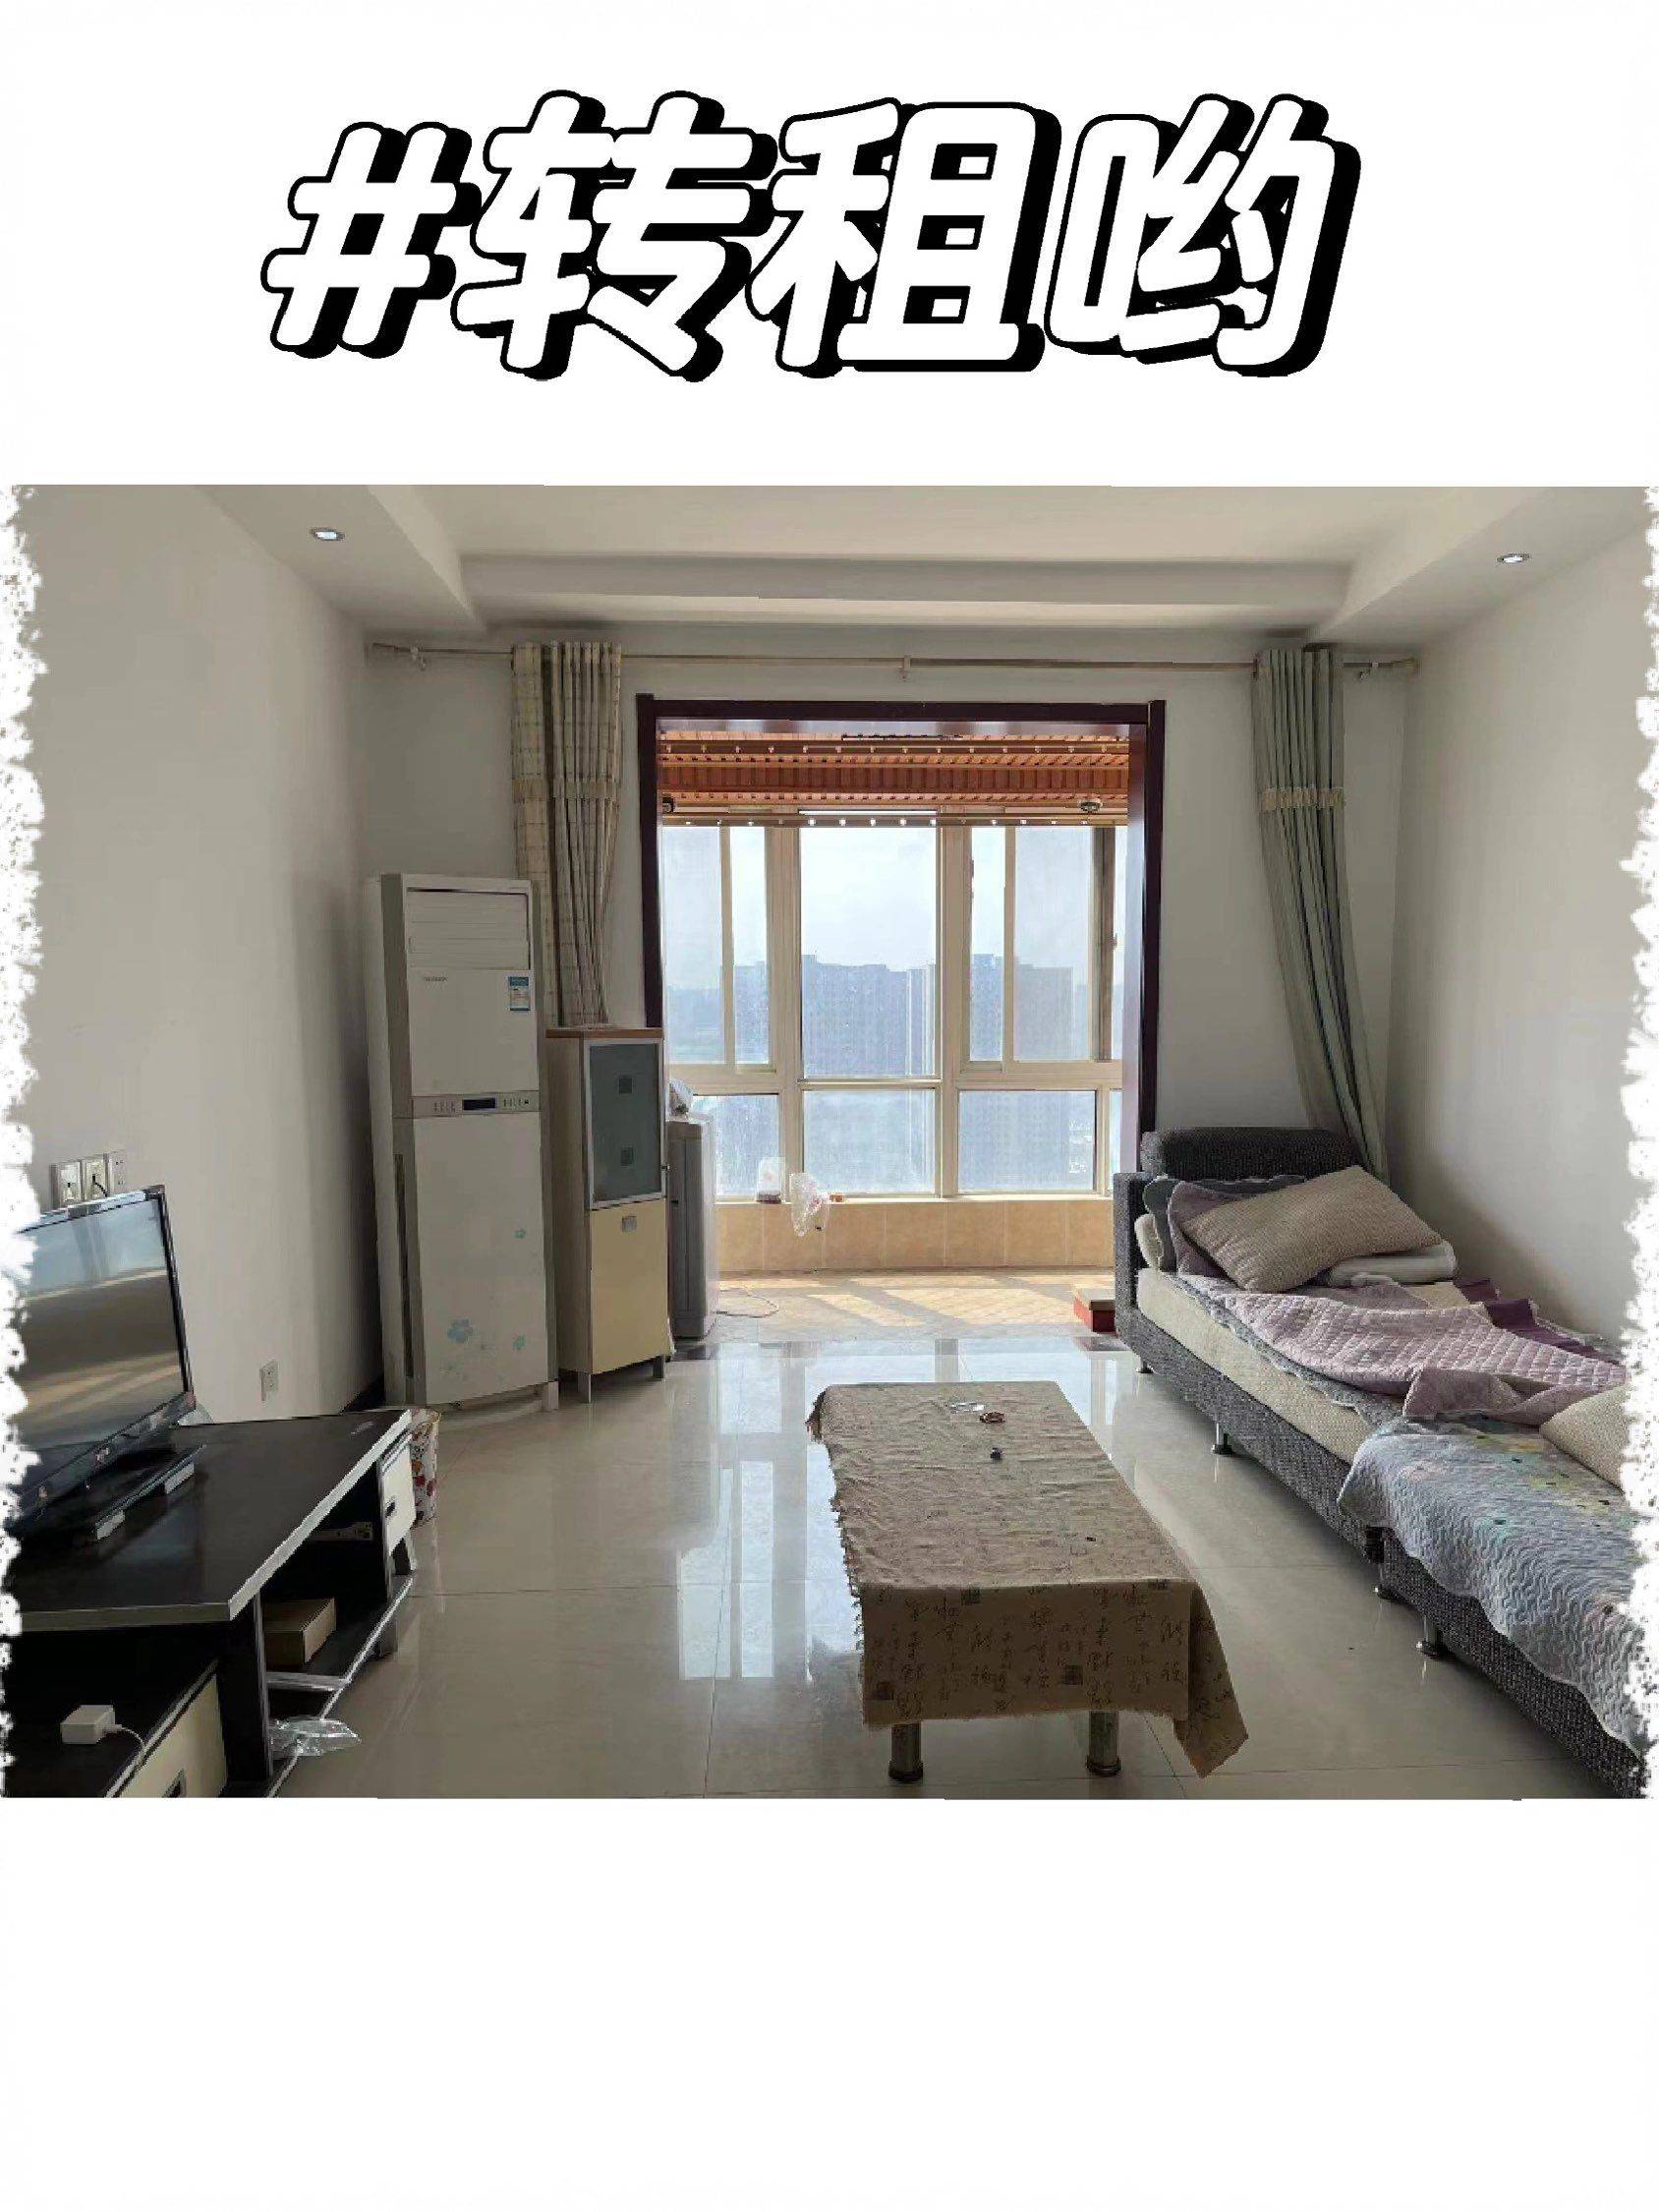 Xi'An-Yanta-Cozy Home,No Gender Limit,Hustle & Bustle